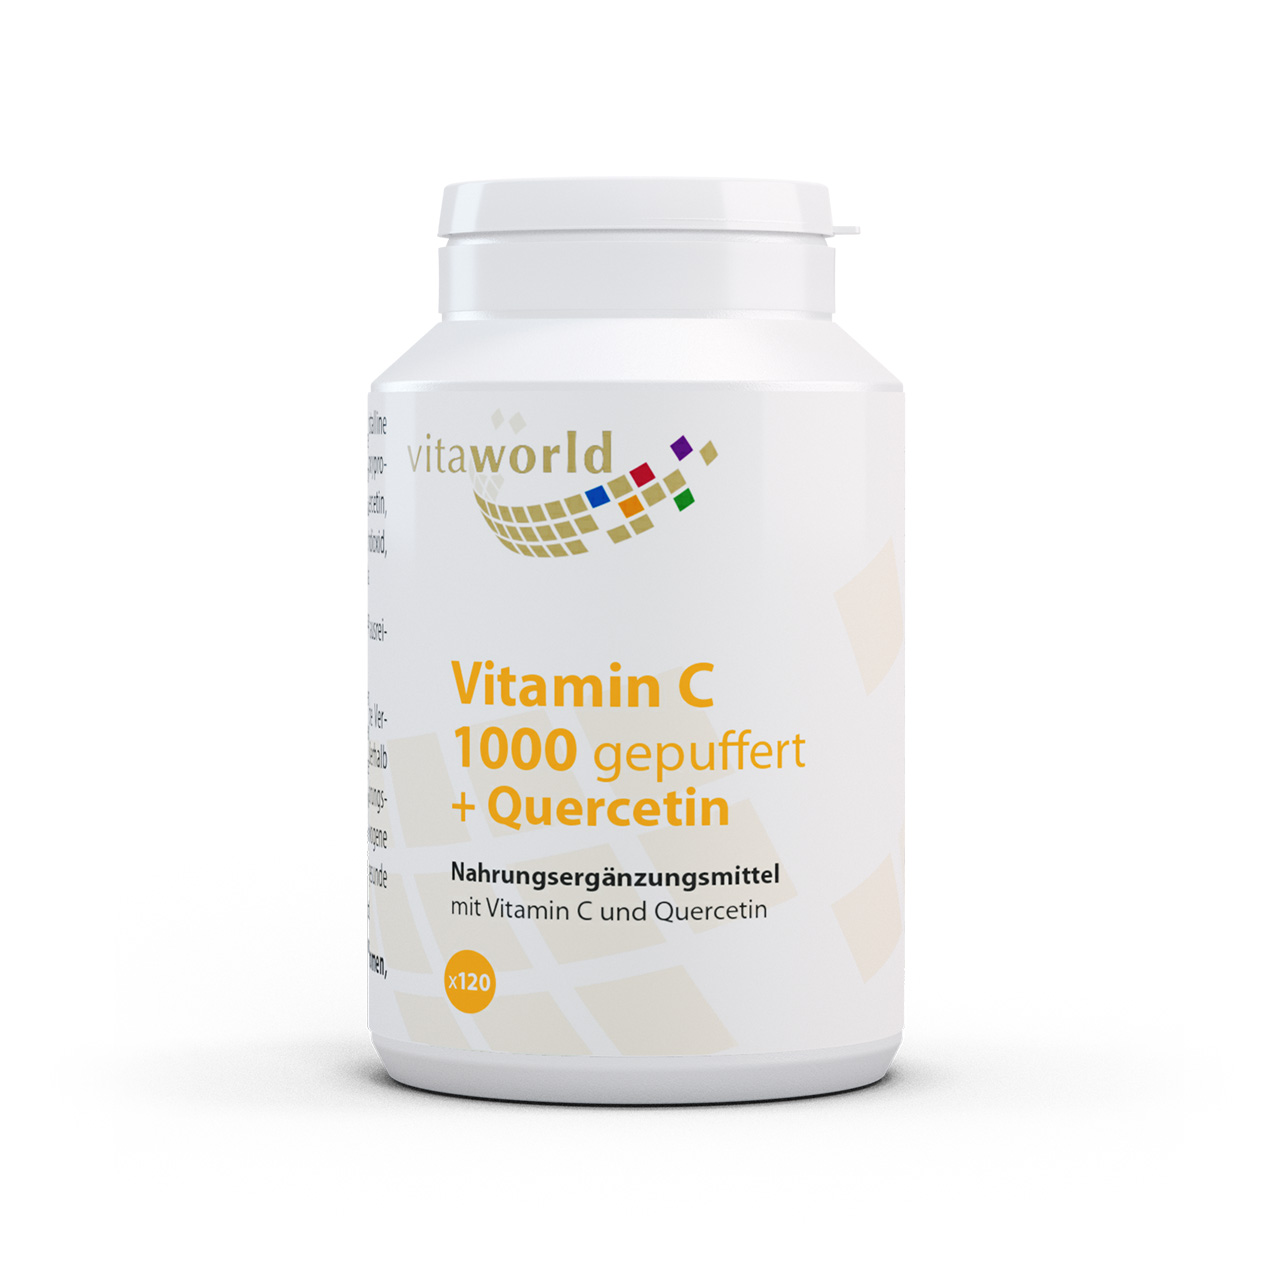 Vitaworld Vitamin C | 1000 gepuffert + Quercetin | 120 Tabletten - Sanfte Unterstützung für Immunsystem & Antioxidation